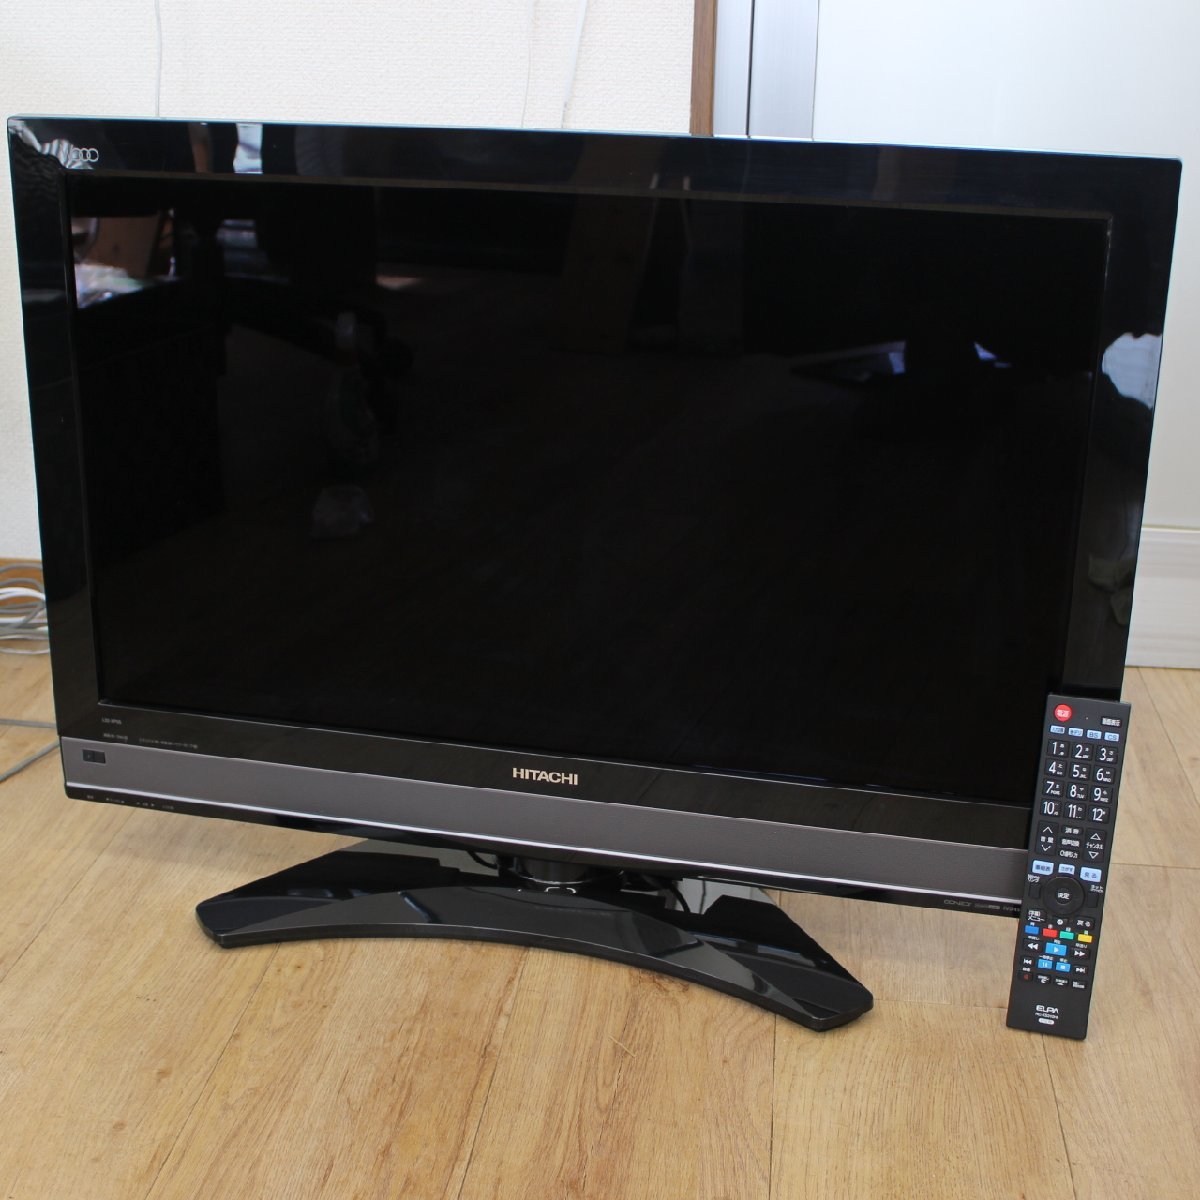 横浜市青葉区にて 日立 ハイビジョン液晶テレビ L32-XP05 2011年製 を出張買取させて頂きました。